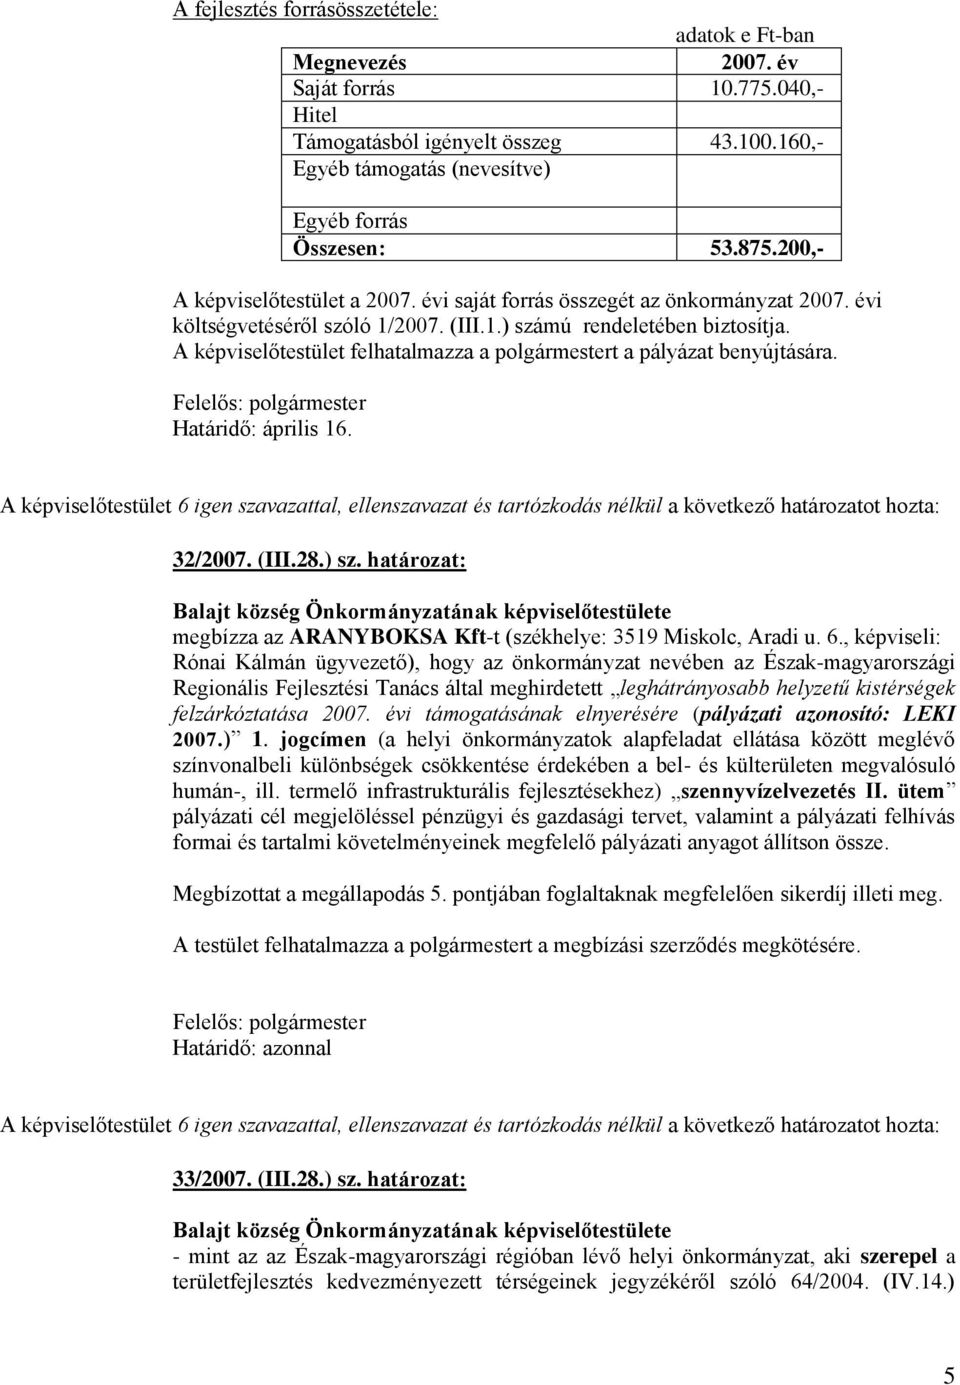 A képviselőtestület felhatalmazza a polgármestert a pályázat benyújtására. Határidő: április 16. 32/2007. (III.28.) sz. határozat: megbízza az ARANYBOKSA Kft-t (székhelye: 3519 Miskolc, Aradi u. 6.